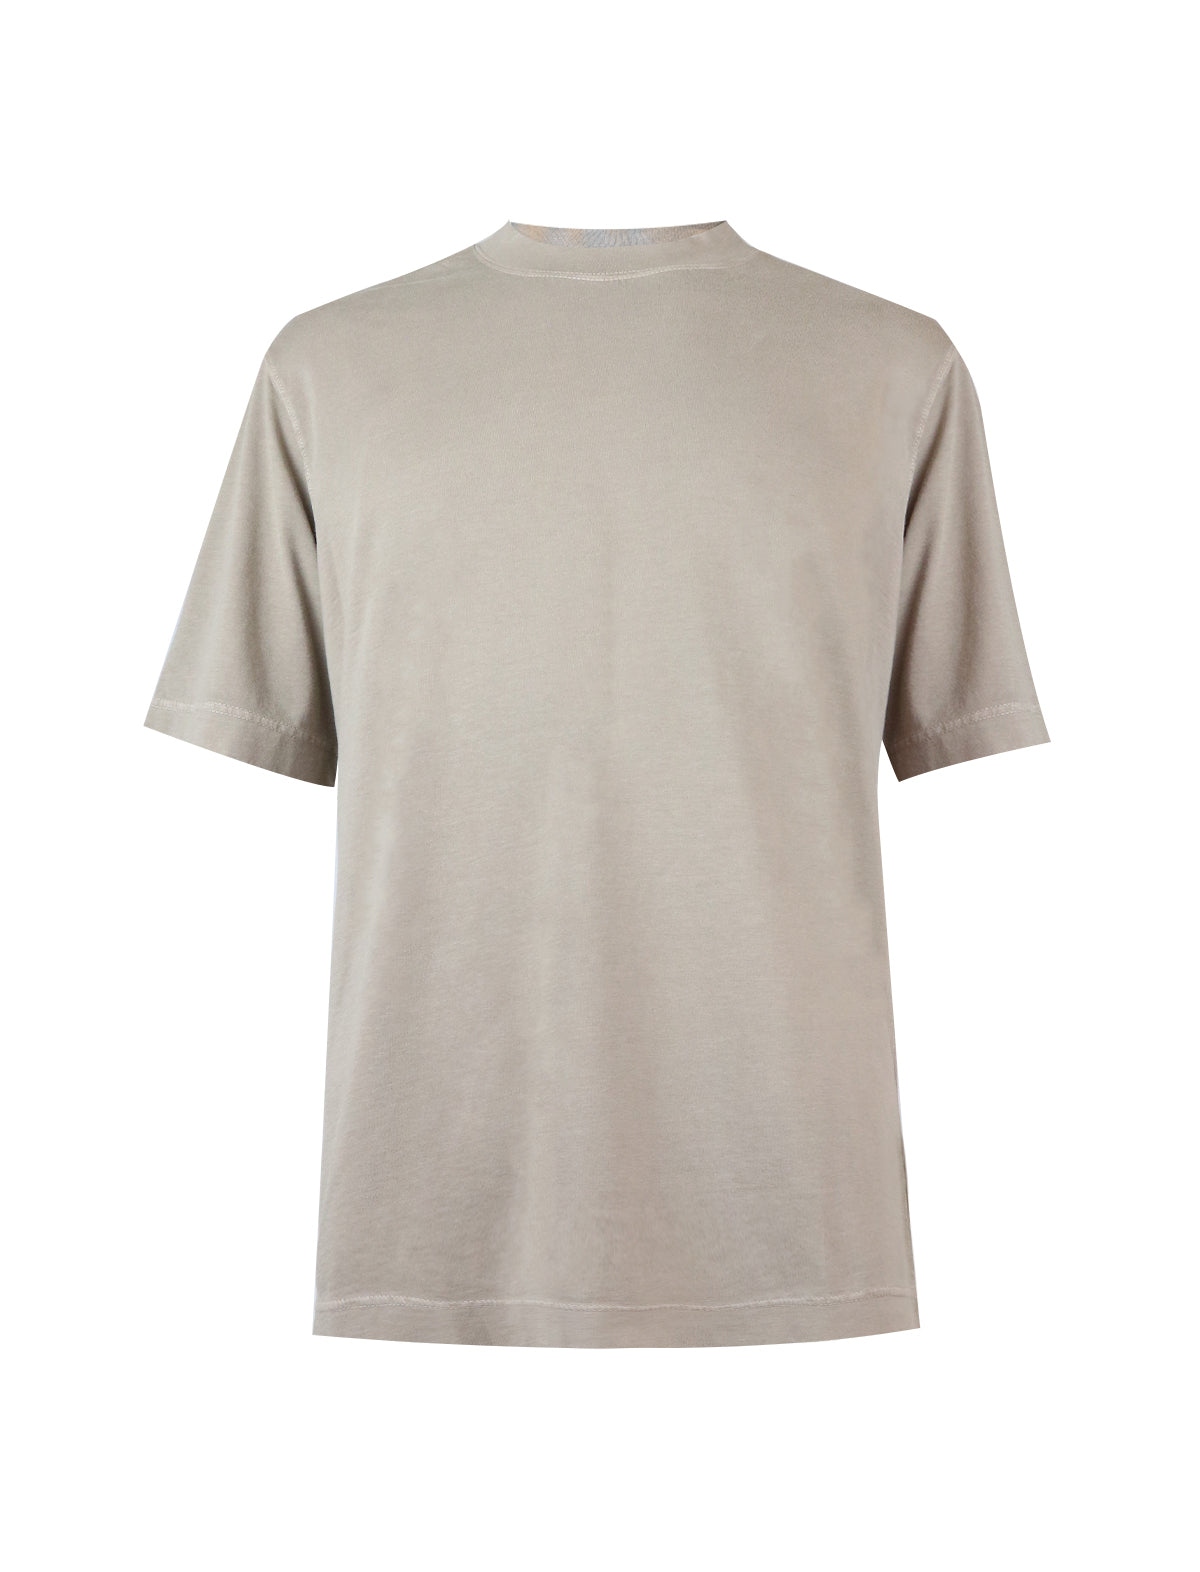 CIRCOLO 1901 Cotton Jersey T-Shirt in Khaki